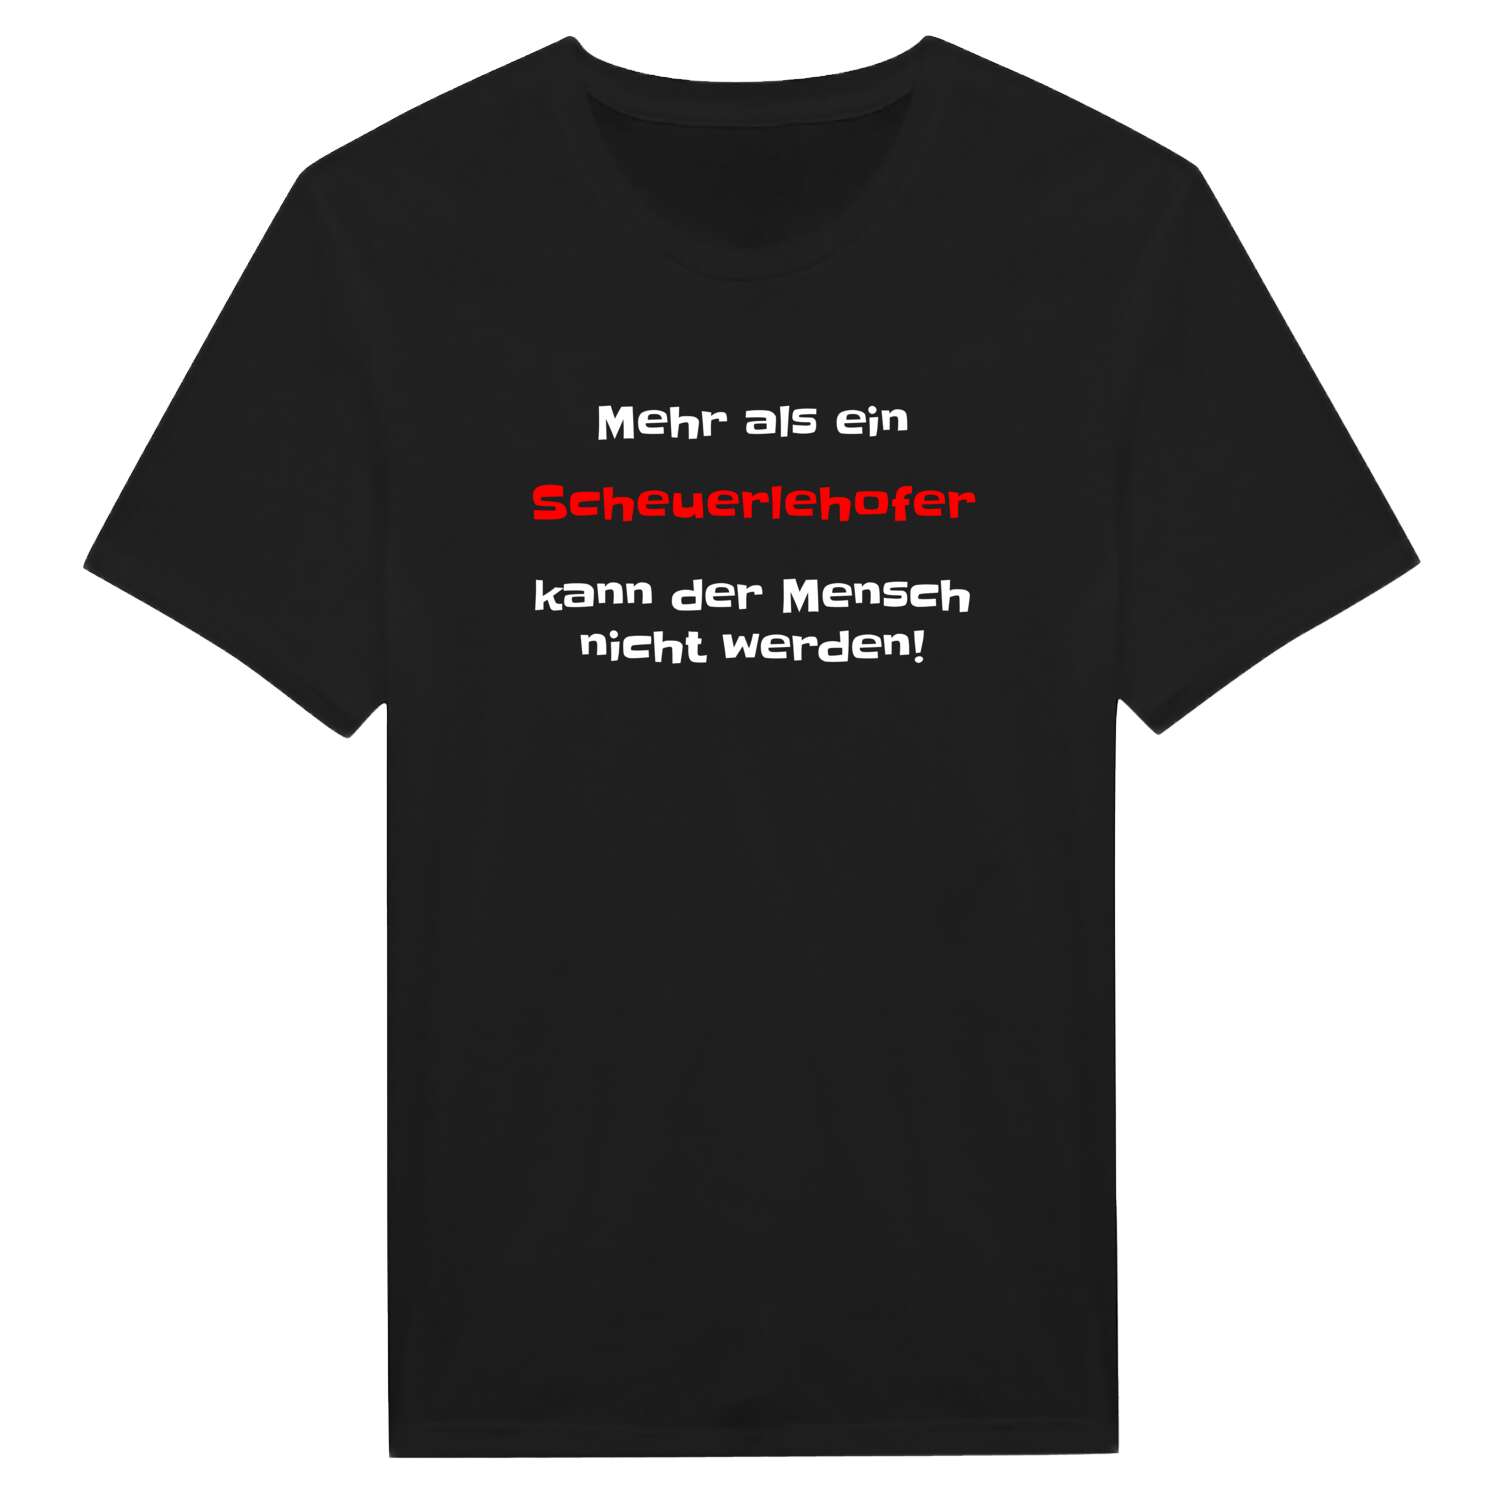 Scheuerlehof T-Shirt »Mehr als ein«